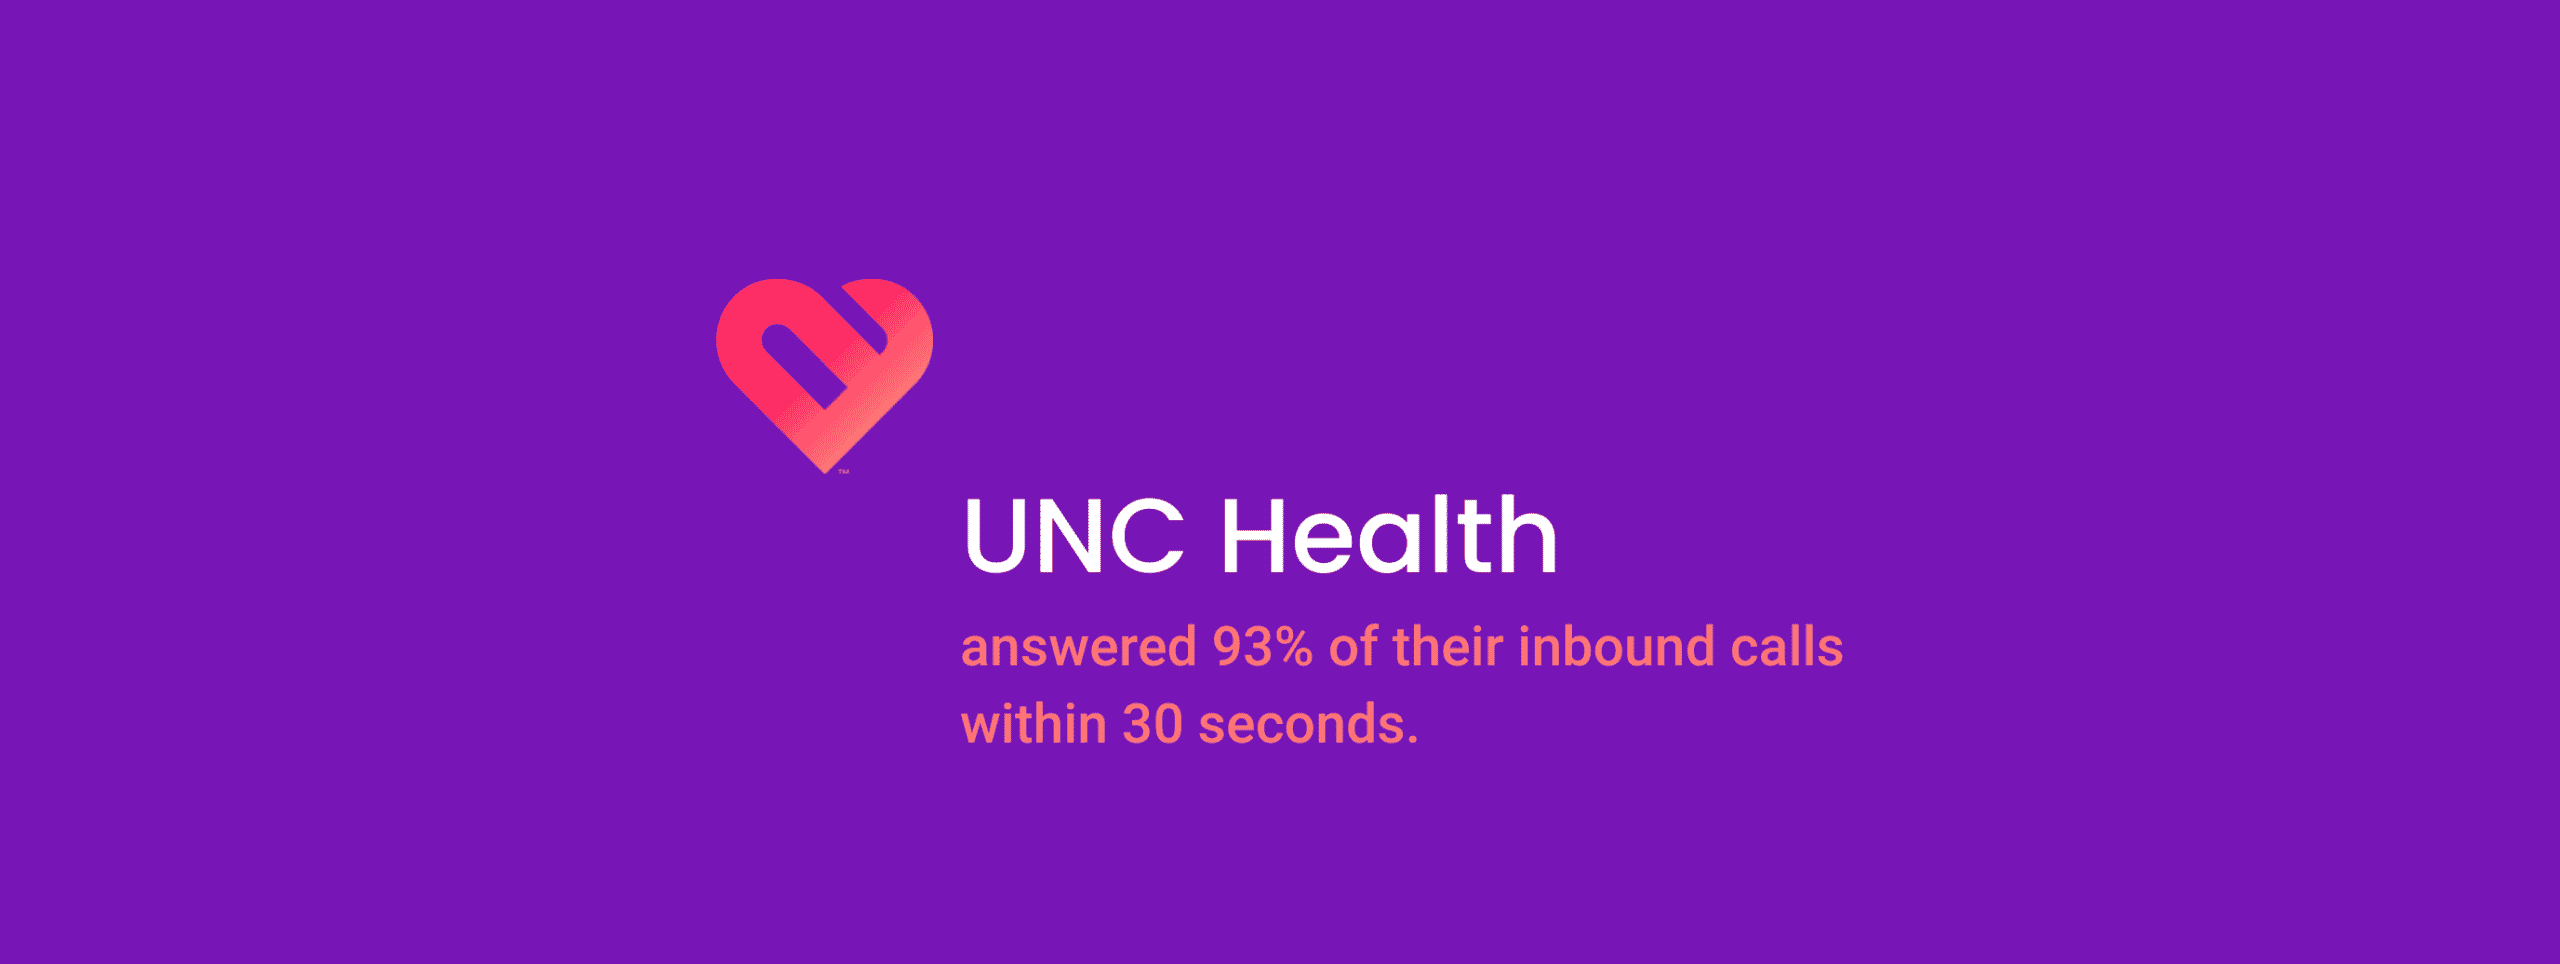 UNC Health Inbound Calls header